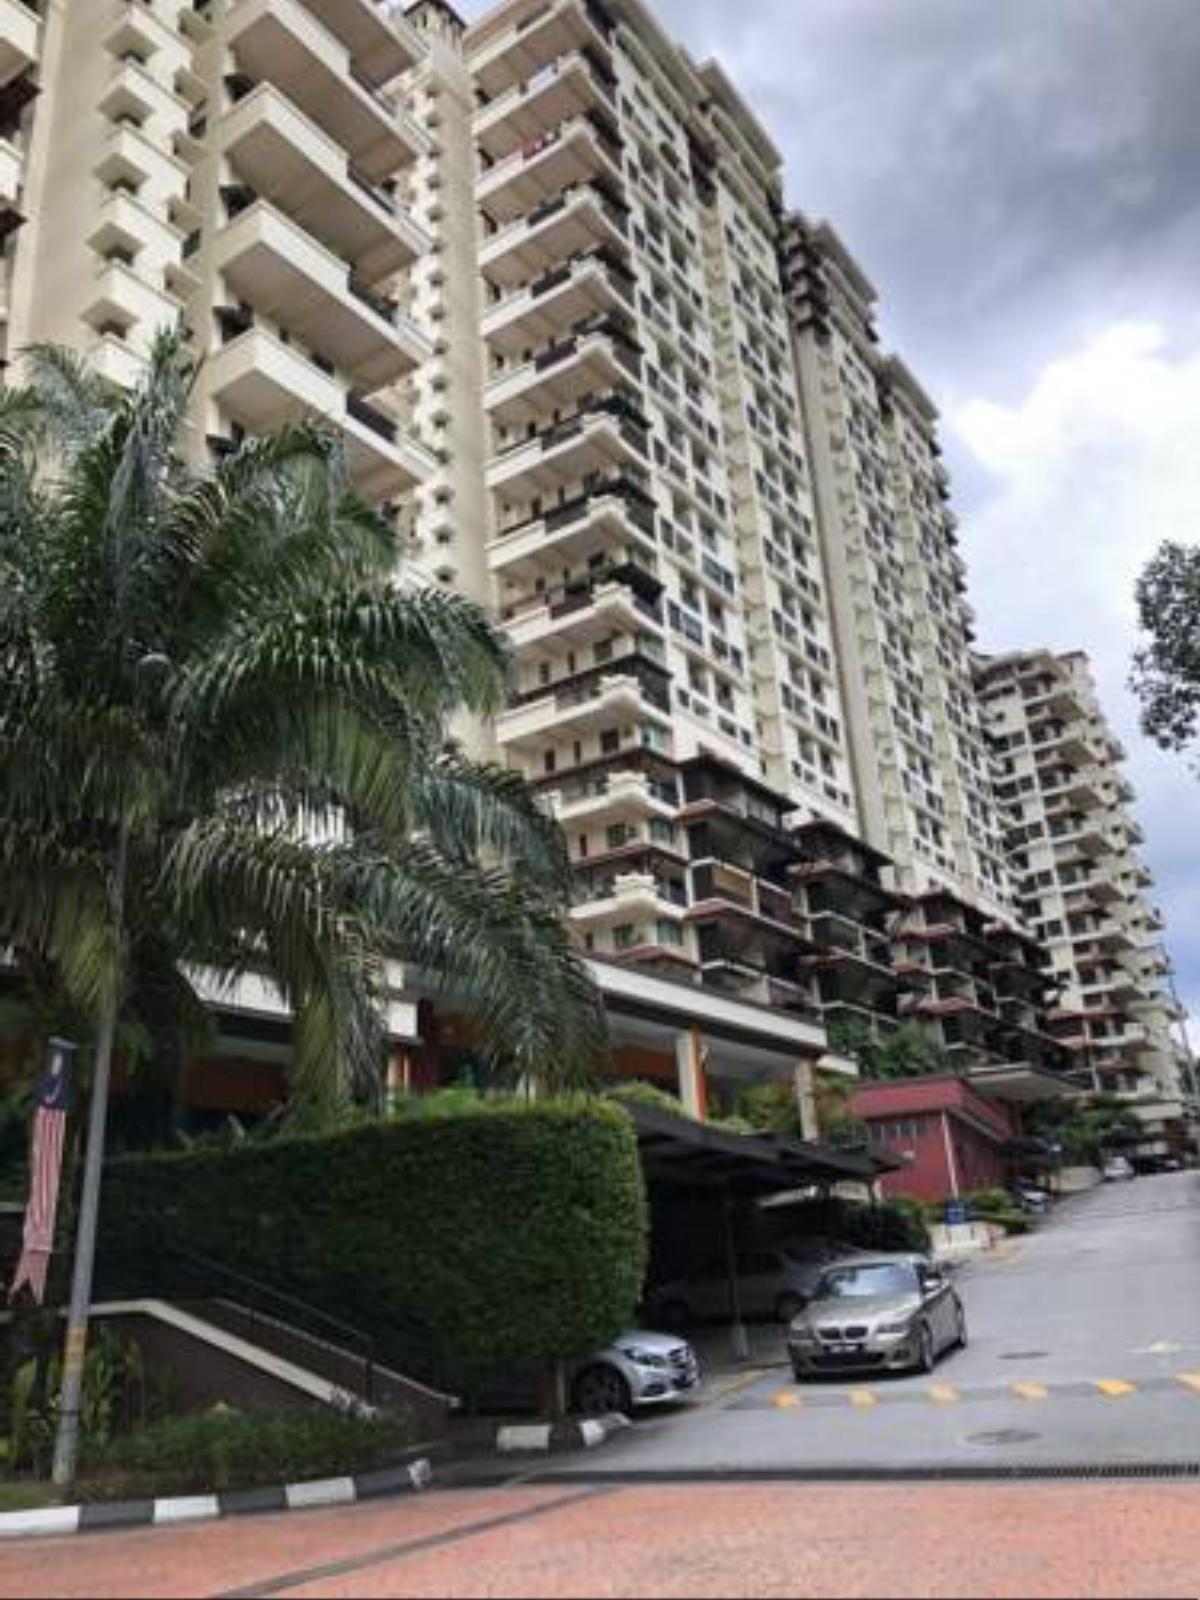 Duplex armanee condominium Hotel Damansara Damai Malaysia